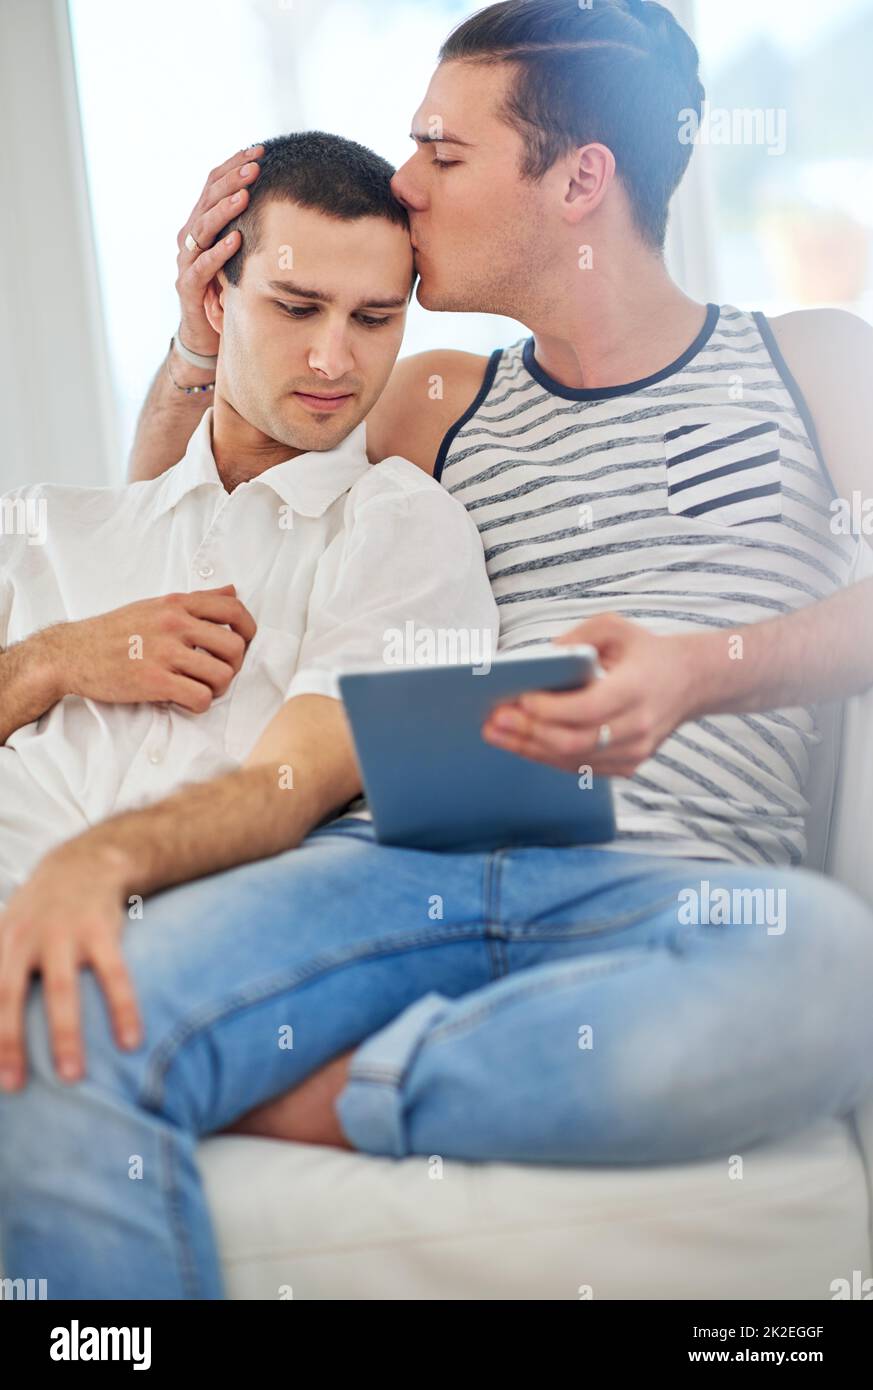 Le temps ensemble est toujours un bon moment. Photo d'un couple gay affectueux à l'aide d'une tablette numérique tout en se relaxant sur le canapé à la maison. Banque D'Images